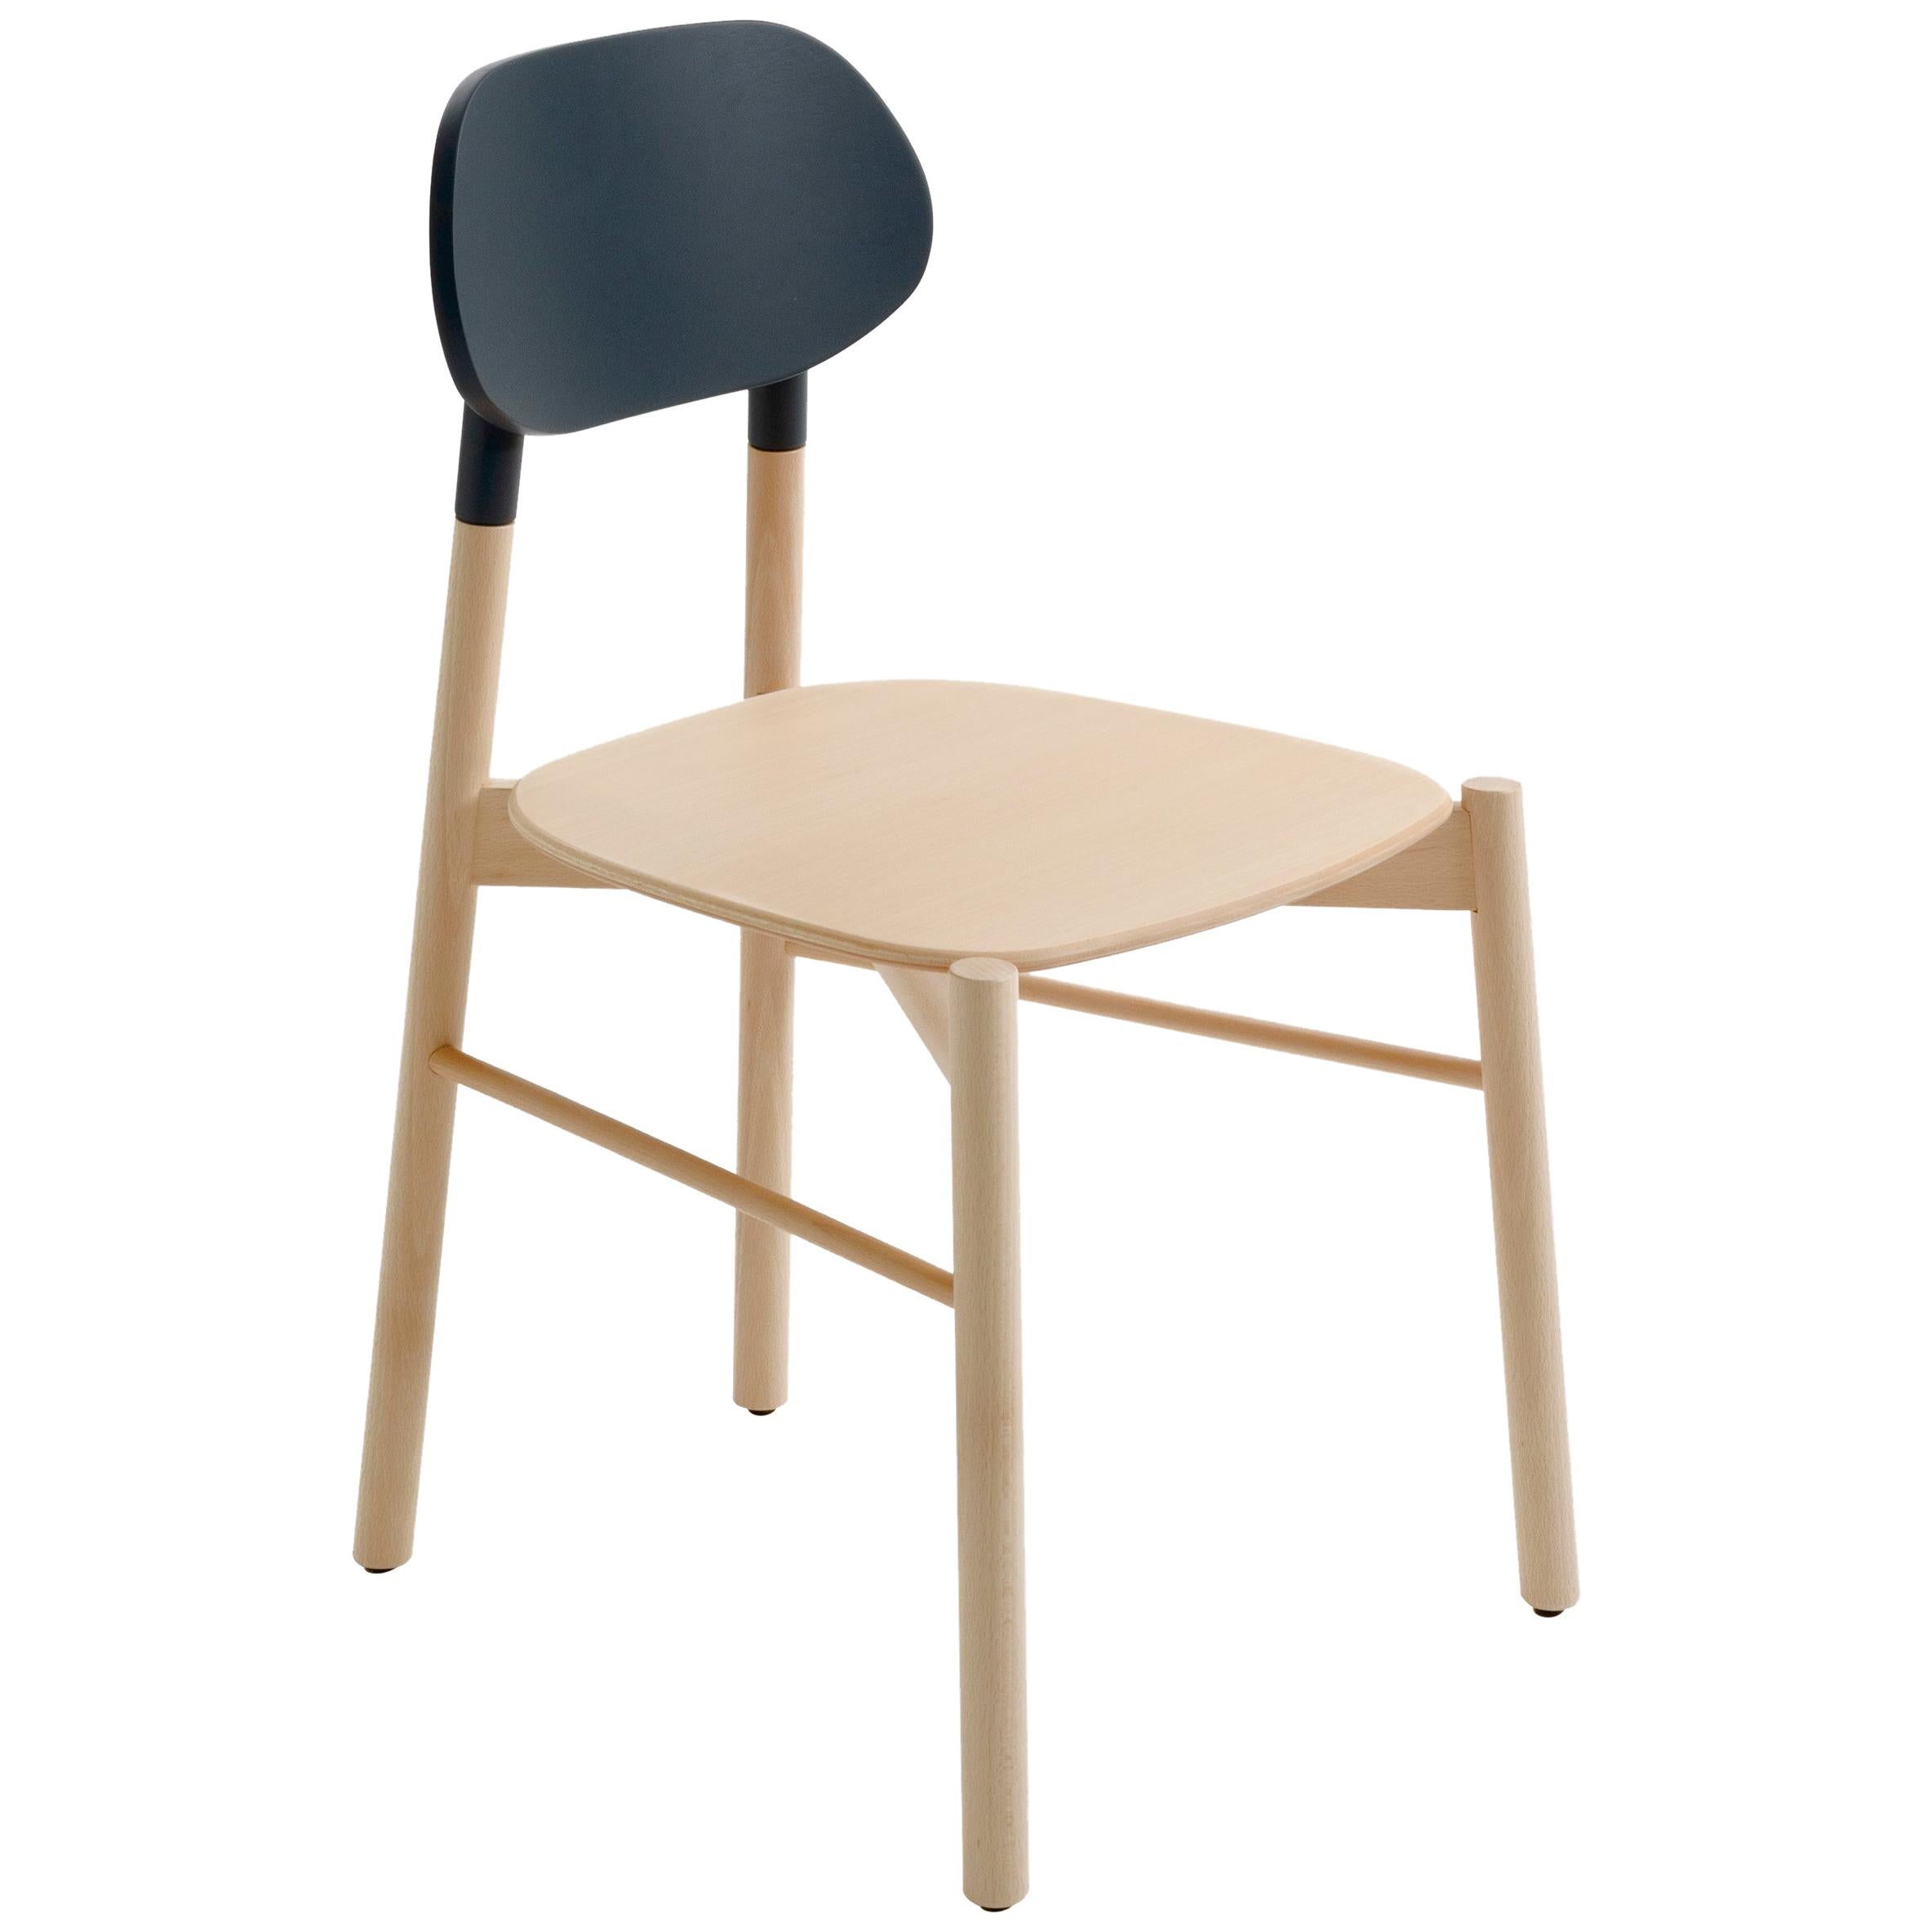 Bokken-Stuhl von Col, Struktur aus Buchenholz, schwarze Rückenlehne, minimalistisches Design